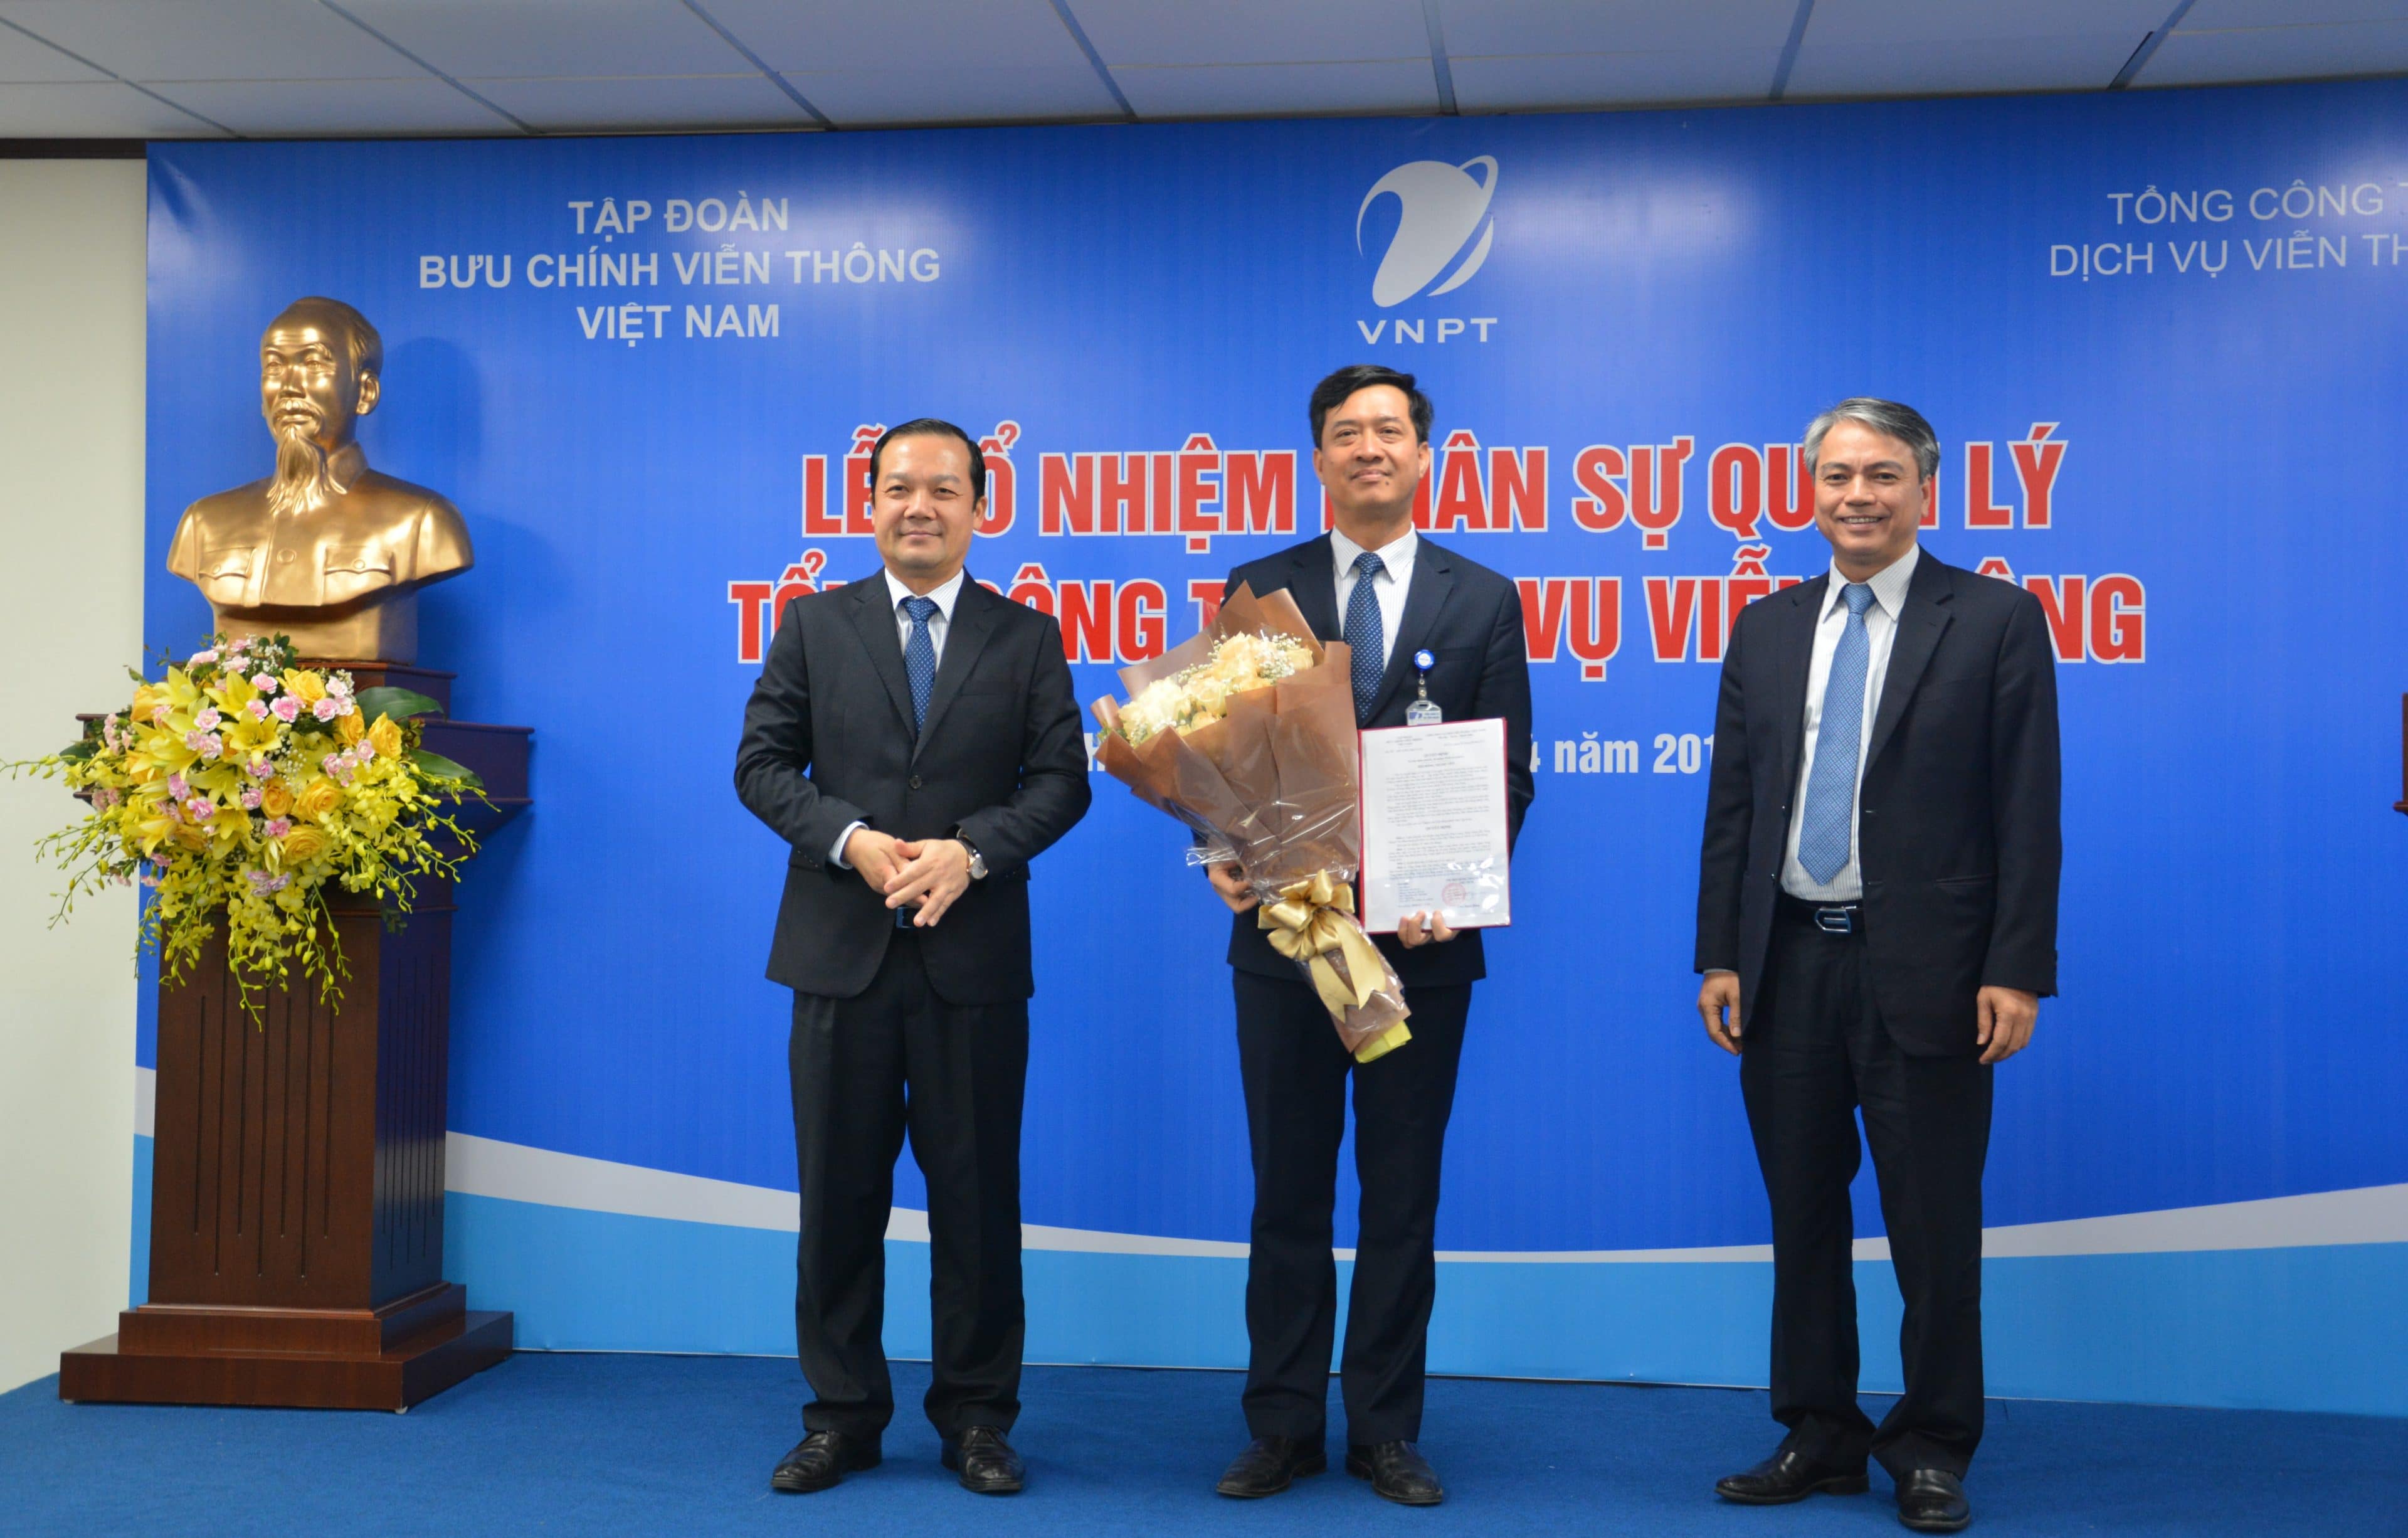 Tập đoàn VNPT bổ nhiệm Tổng Giám đốc VinaPhone - ông Nguyễn Nam Long